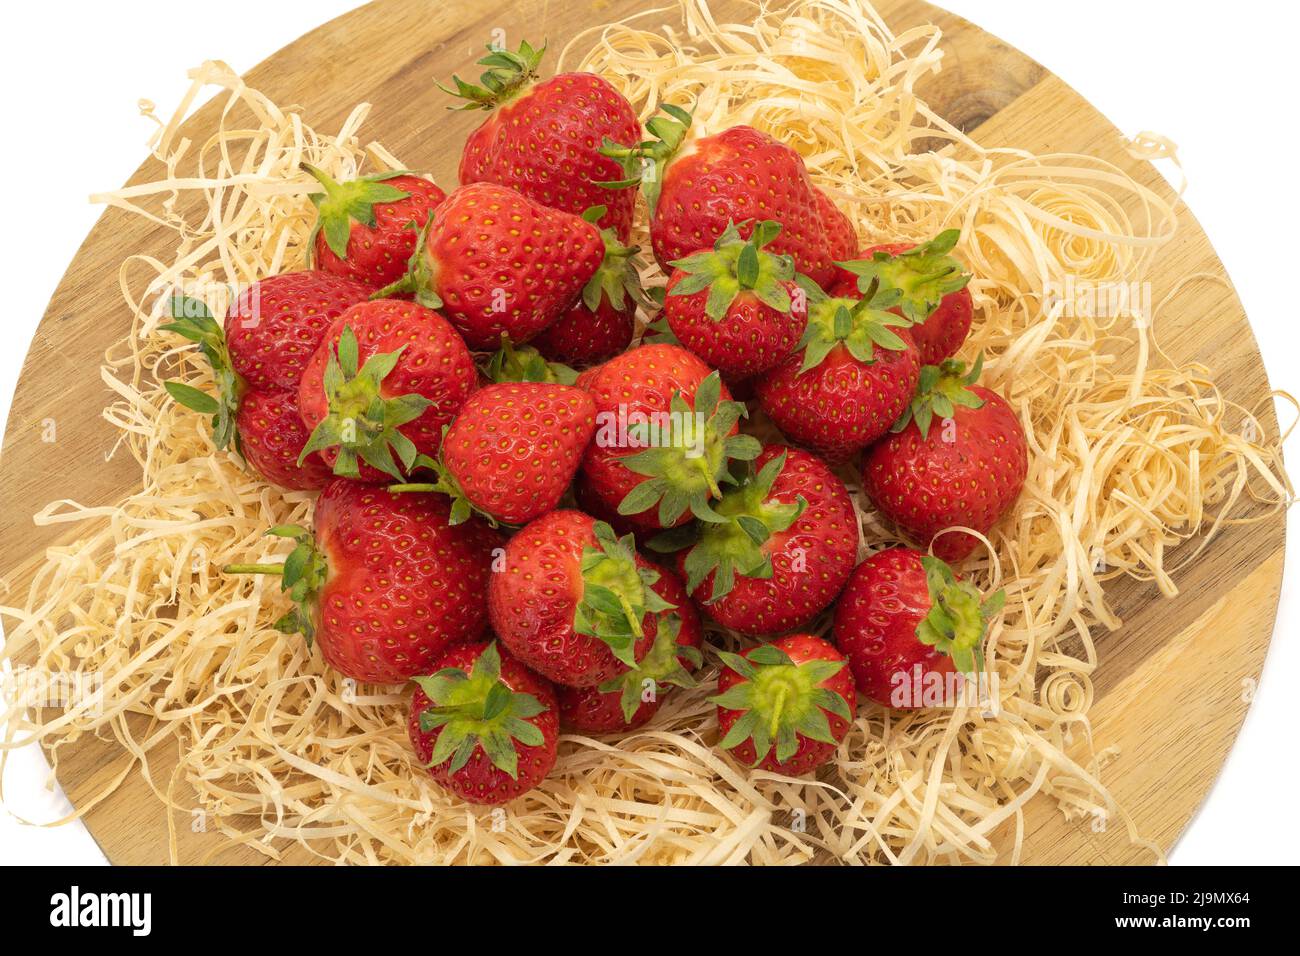 Un lote de fresas frescas tumbadas sobre paja fresca del jardín y listas para comer Foto de stock